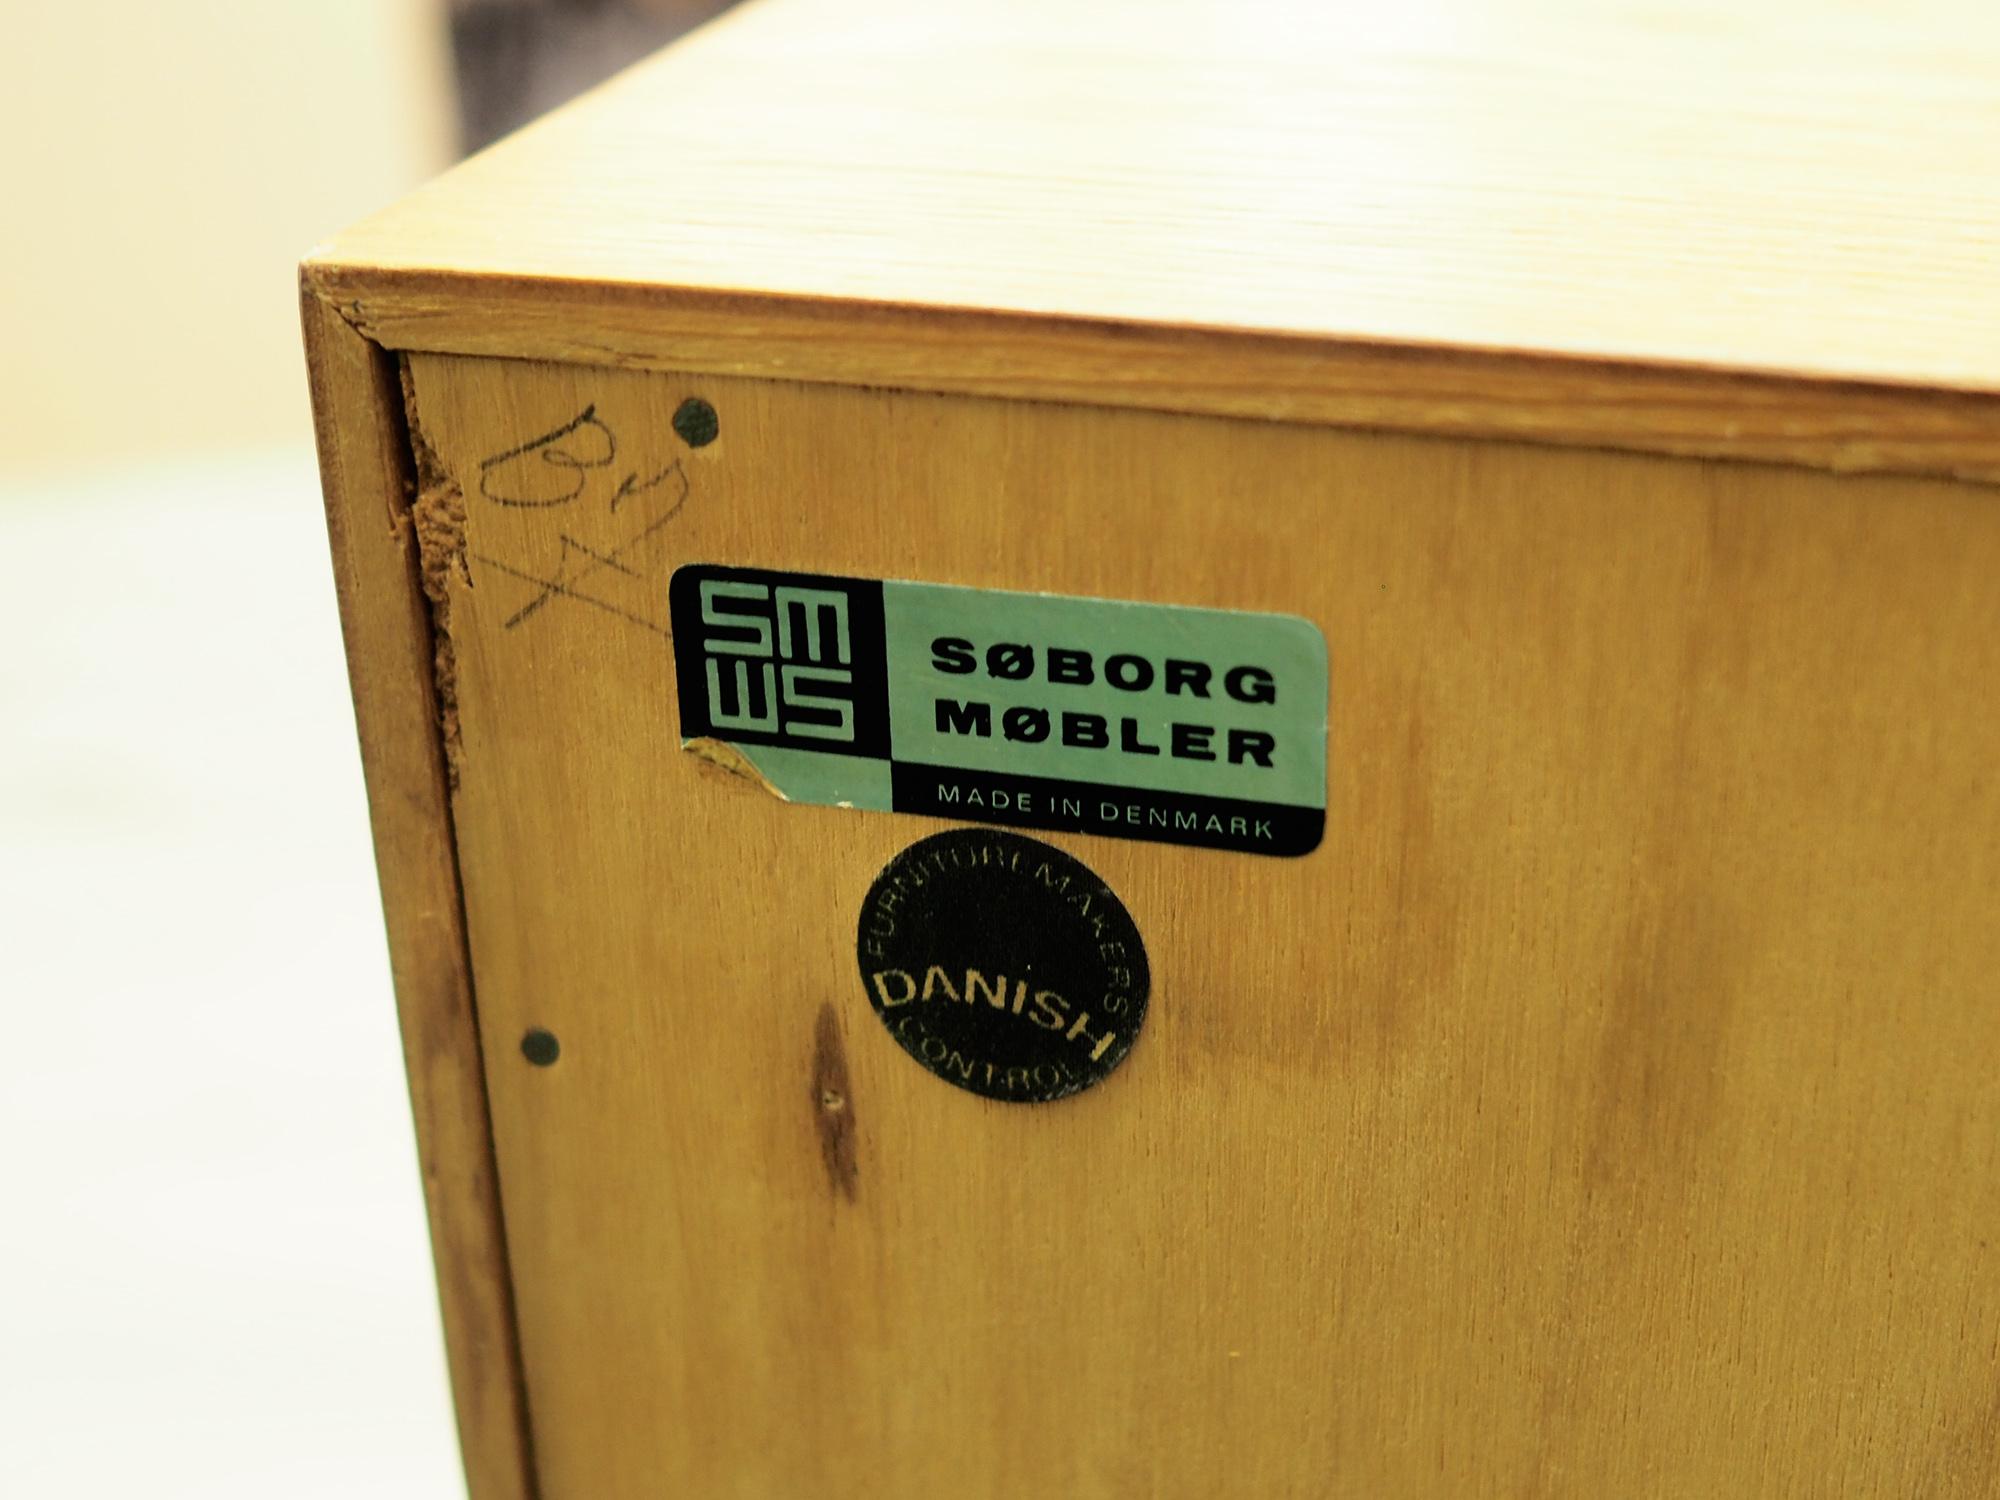  Bookcase Oak, Danish Design, 1960s, Producer Søborg, Designer Mogensen For Sale 5